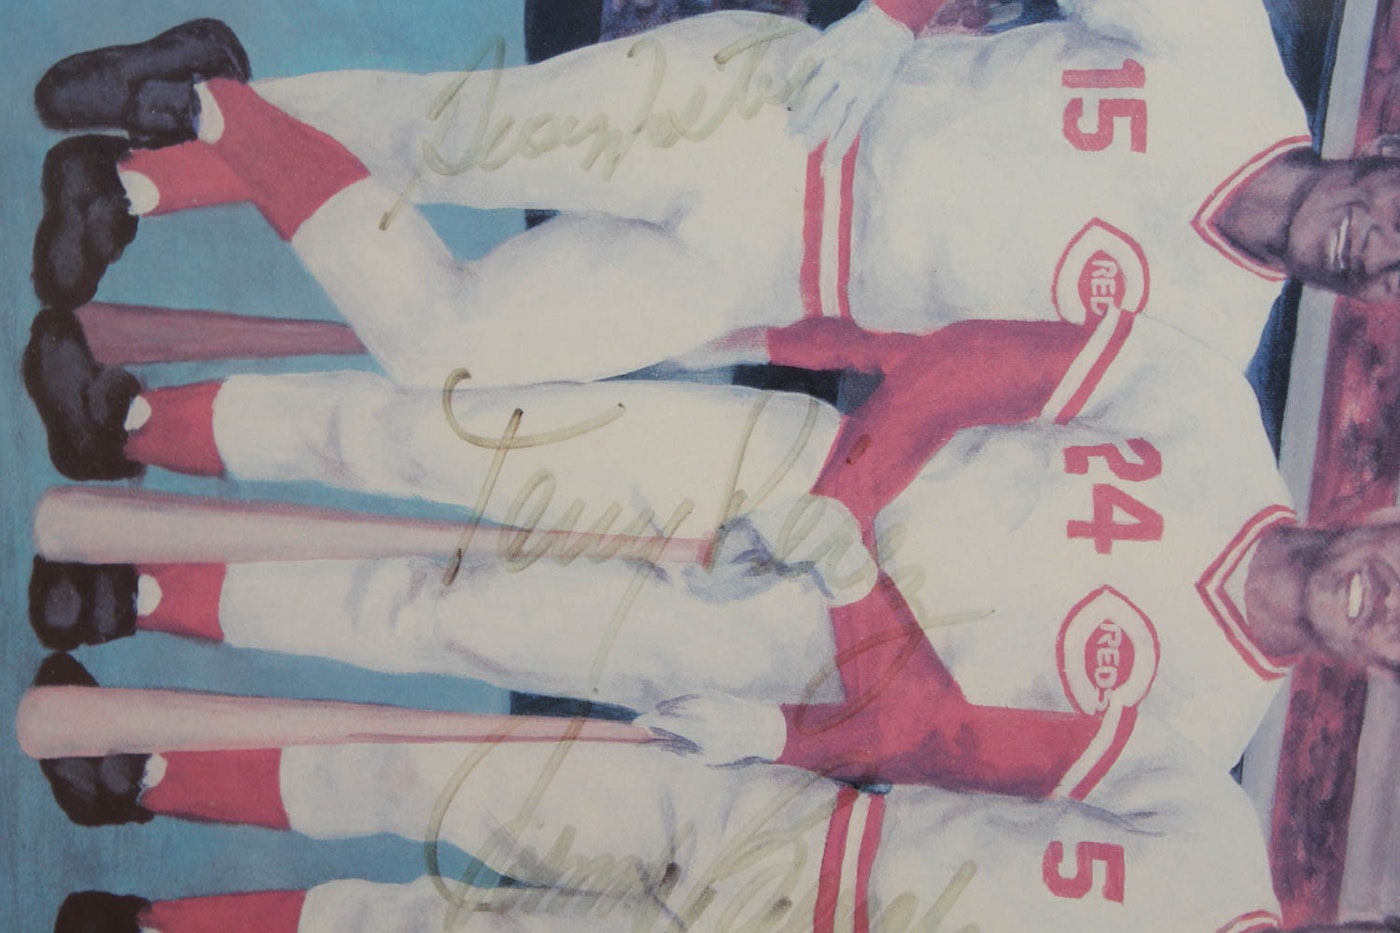 1976 Cincinnati Reds 